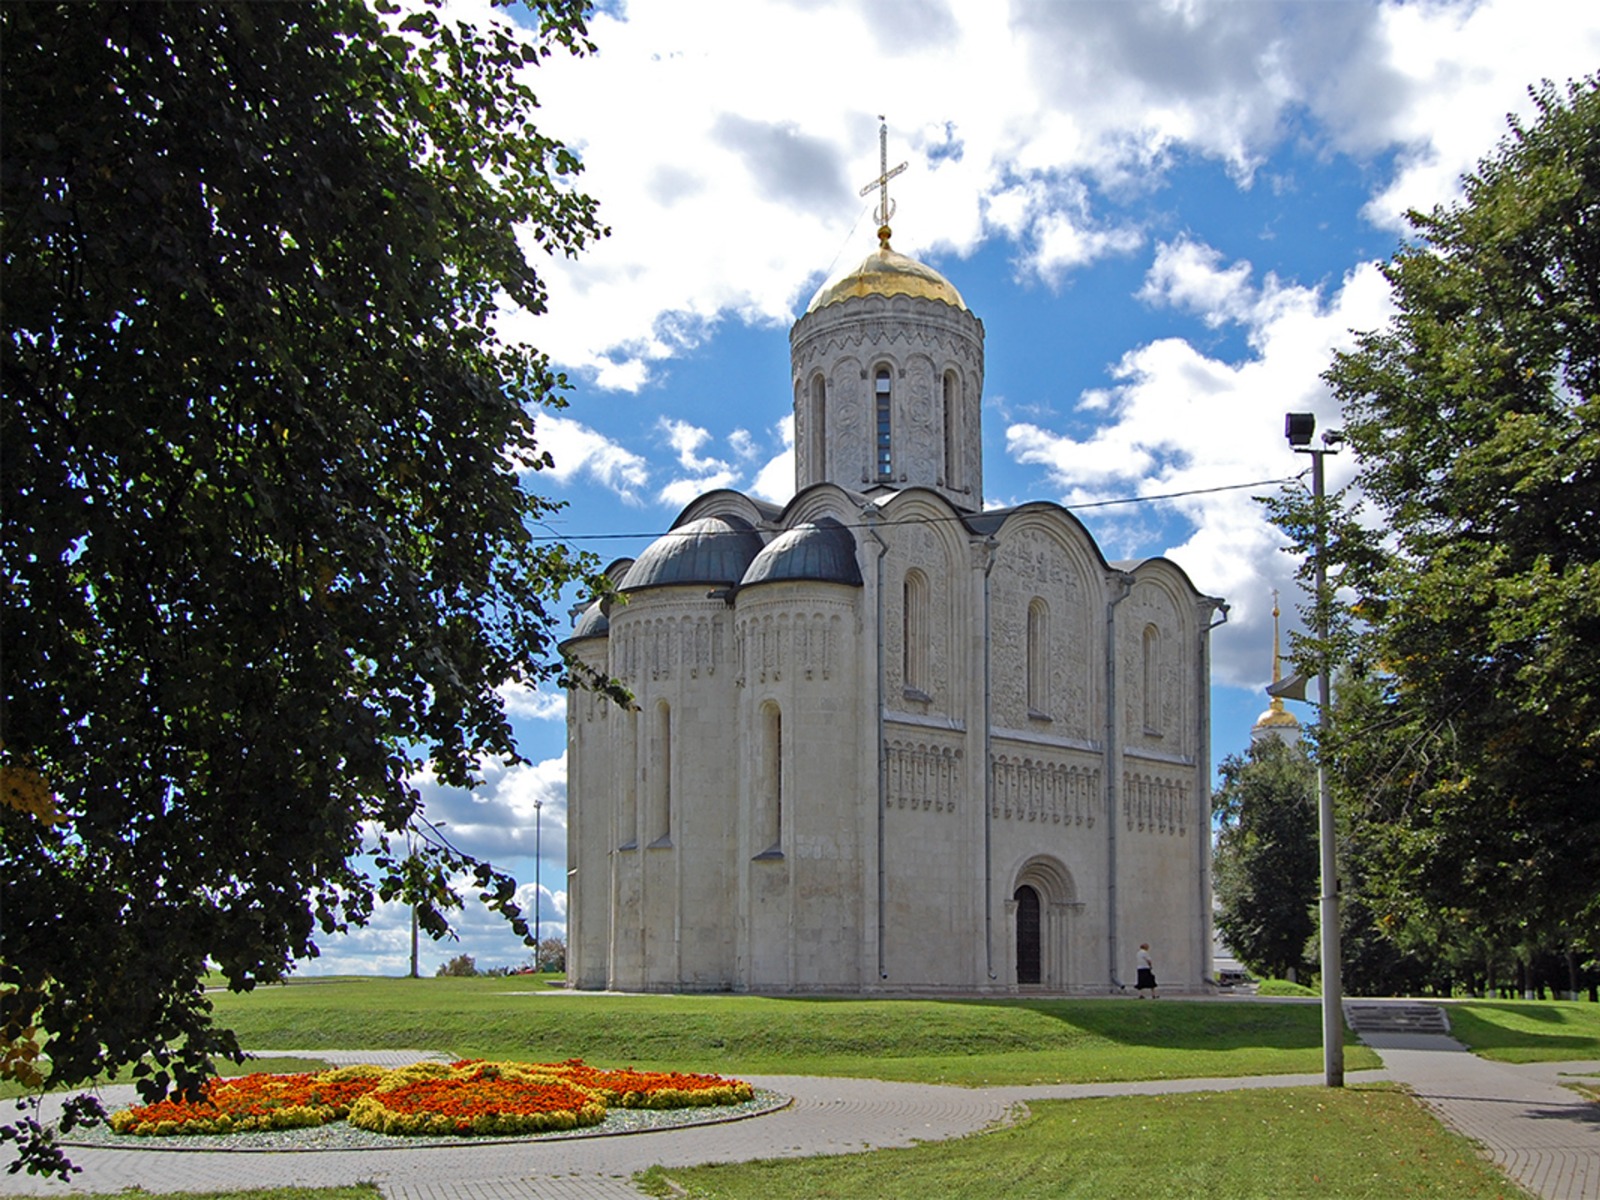 Дмитриевский собор 12 века в резиденции Всеволода III Большое Гнездо. Сегодня музей